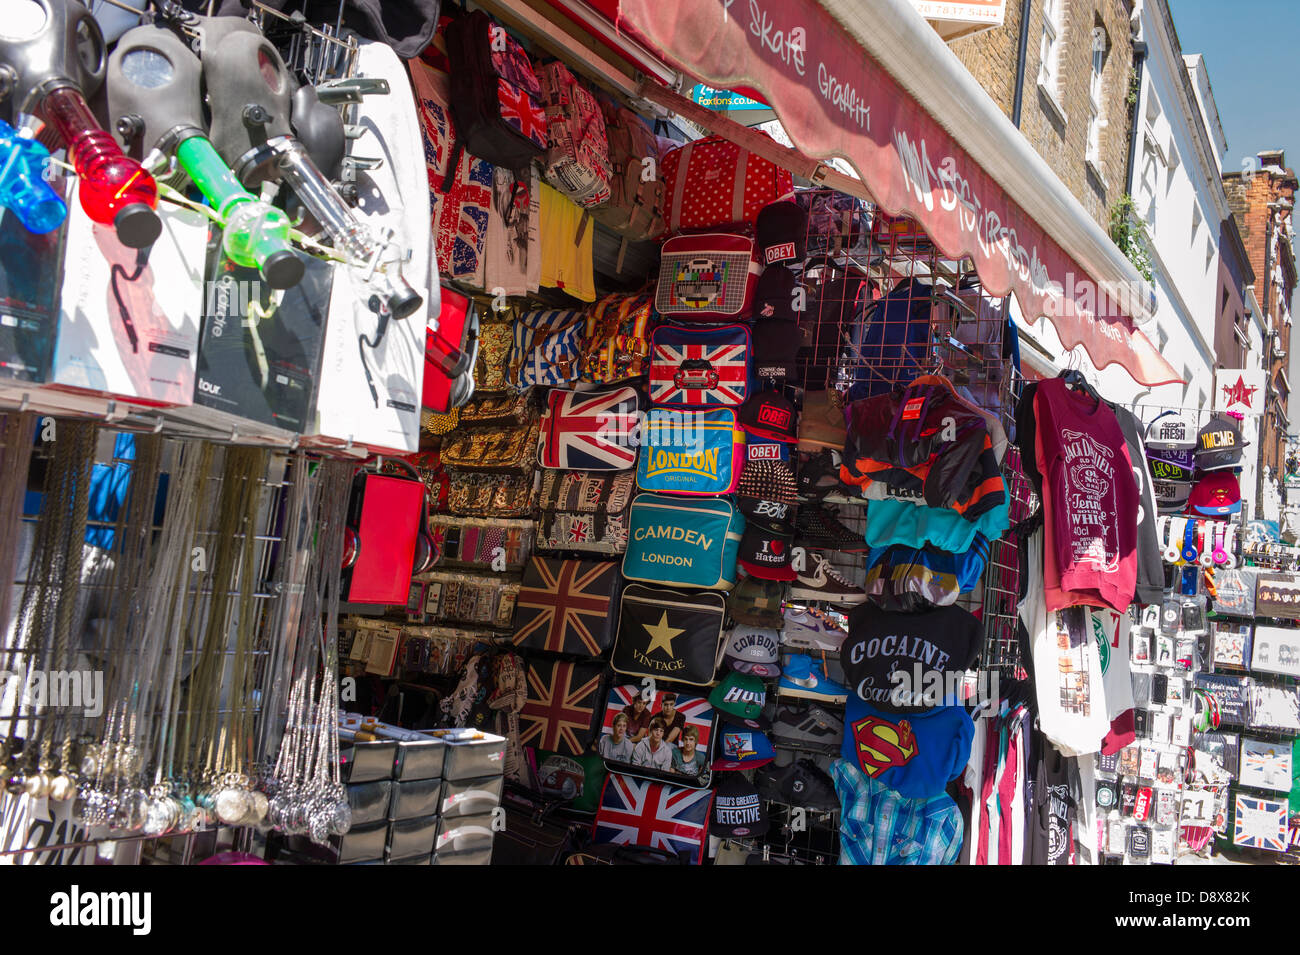 London UK, Camden Town, Camden Market, t.shirt and souvenir shop, market stall Stock Photo